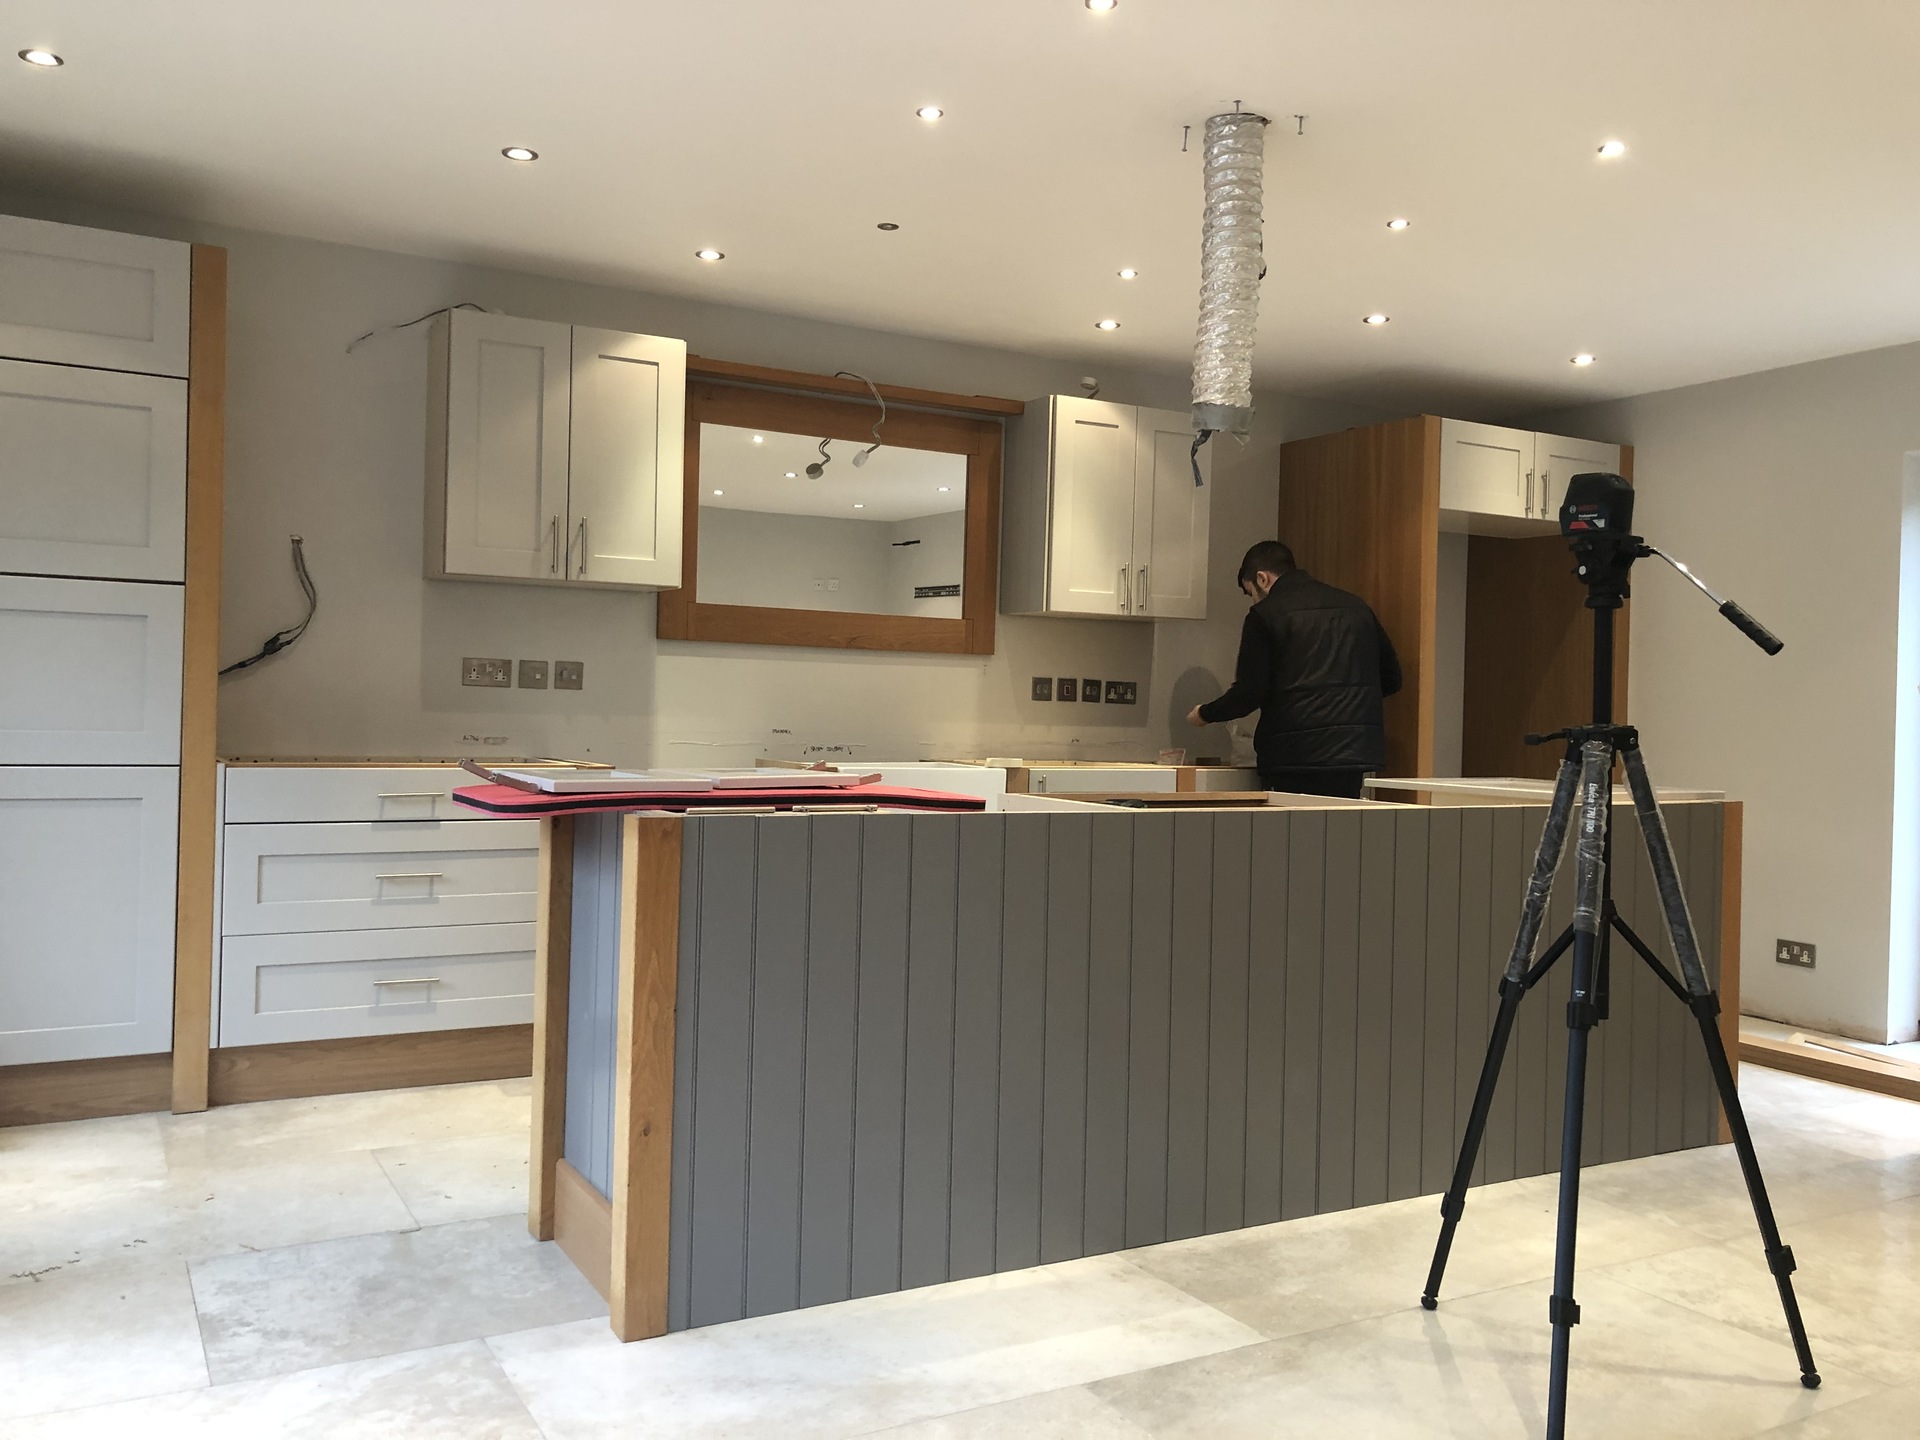 Re-installing kitchen, Maidenhead